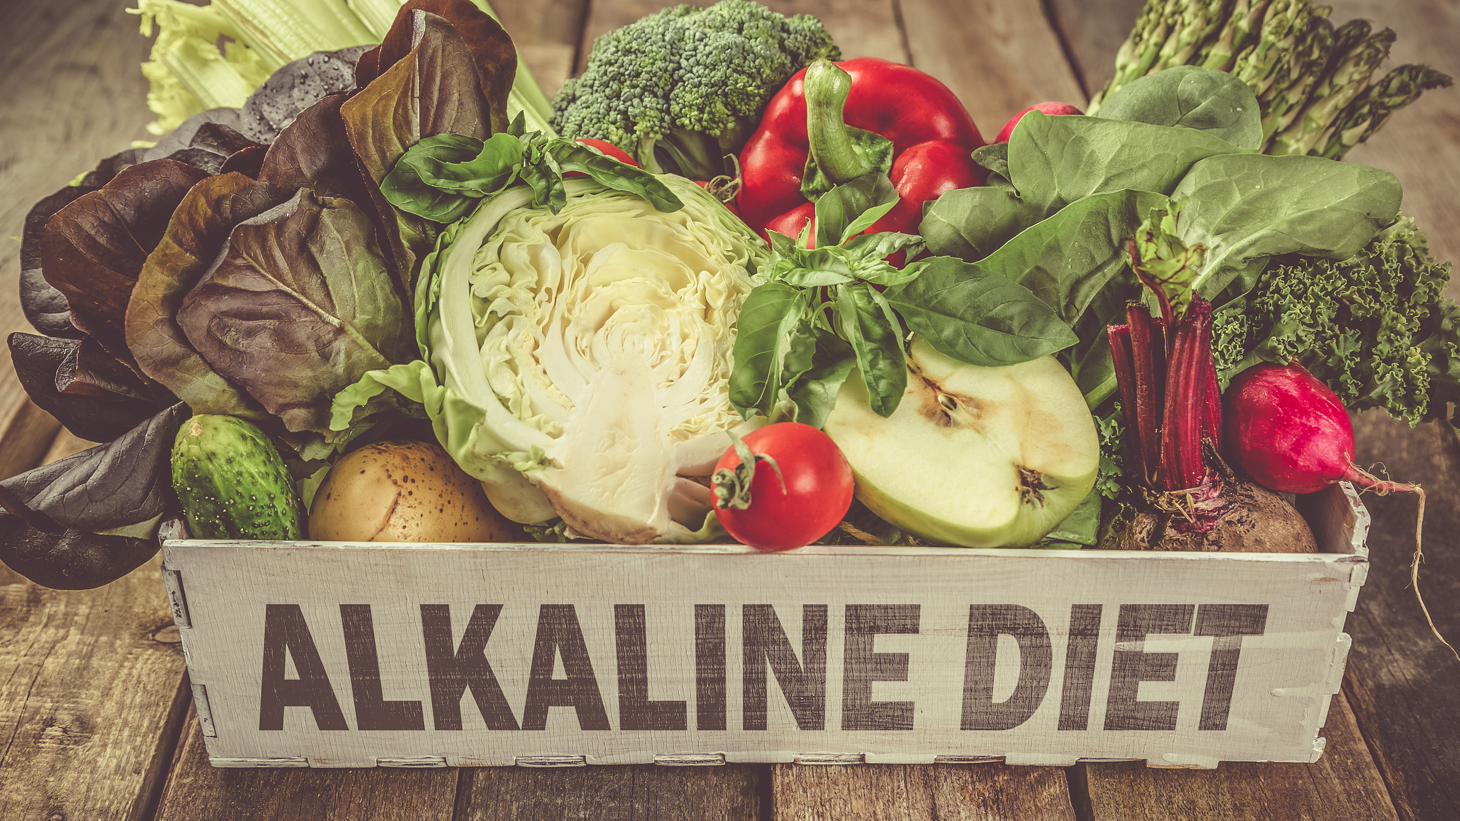 Advantages of An Alkaline Diet